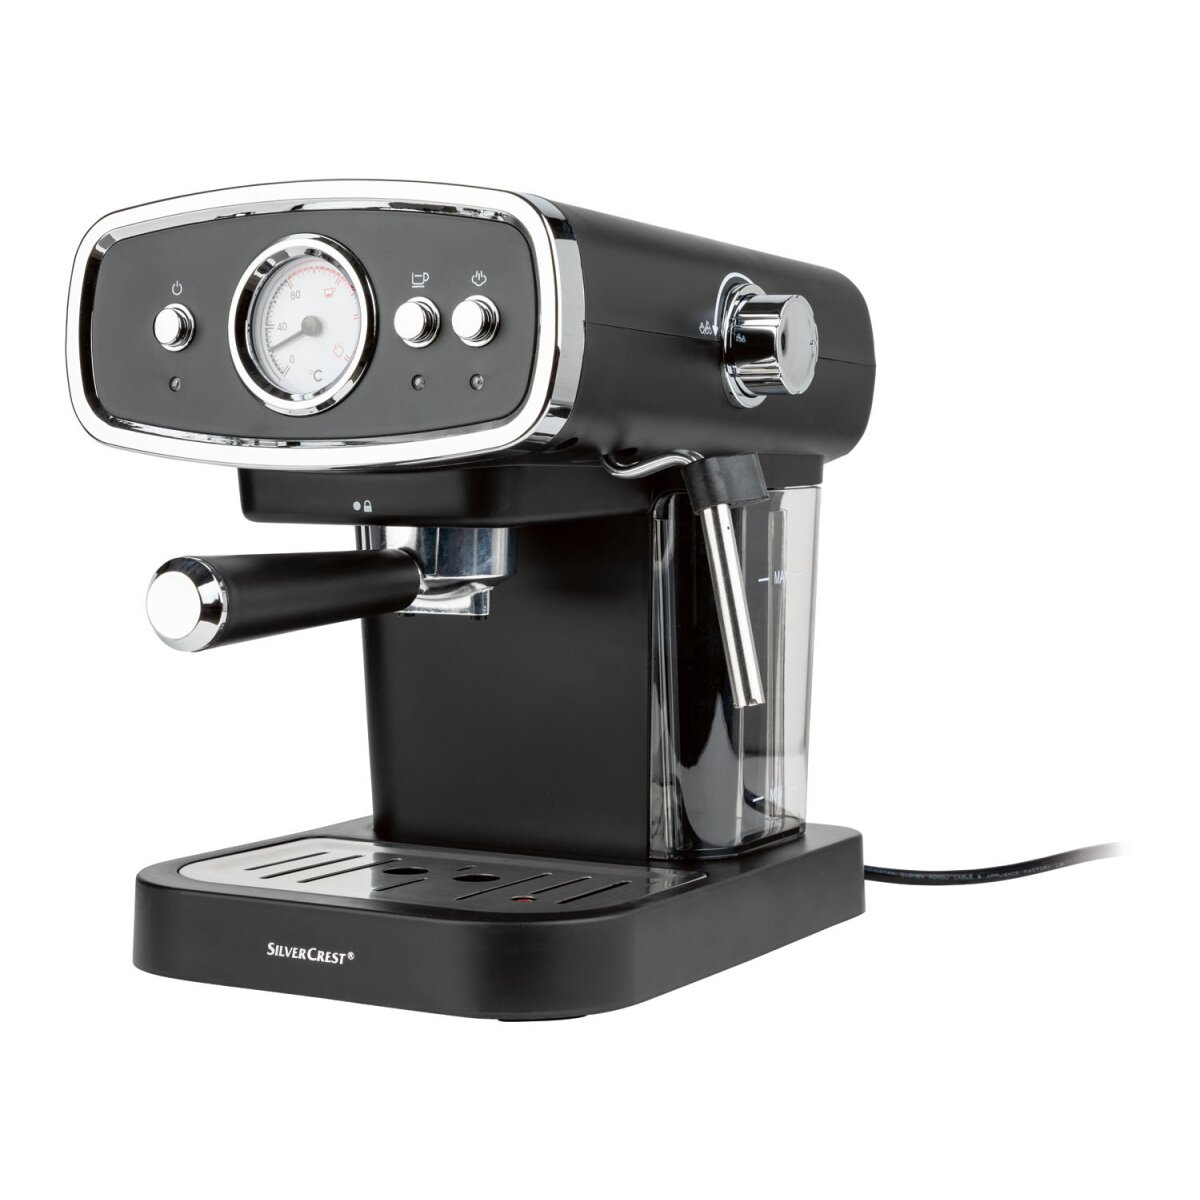 SILVERCREST® KITCHEN TOOLS Espressomaschine »SEM 1050 B1«, mit Siebträger  (schwarz) - B-Ware neuwert, 72,99 €